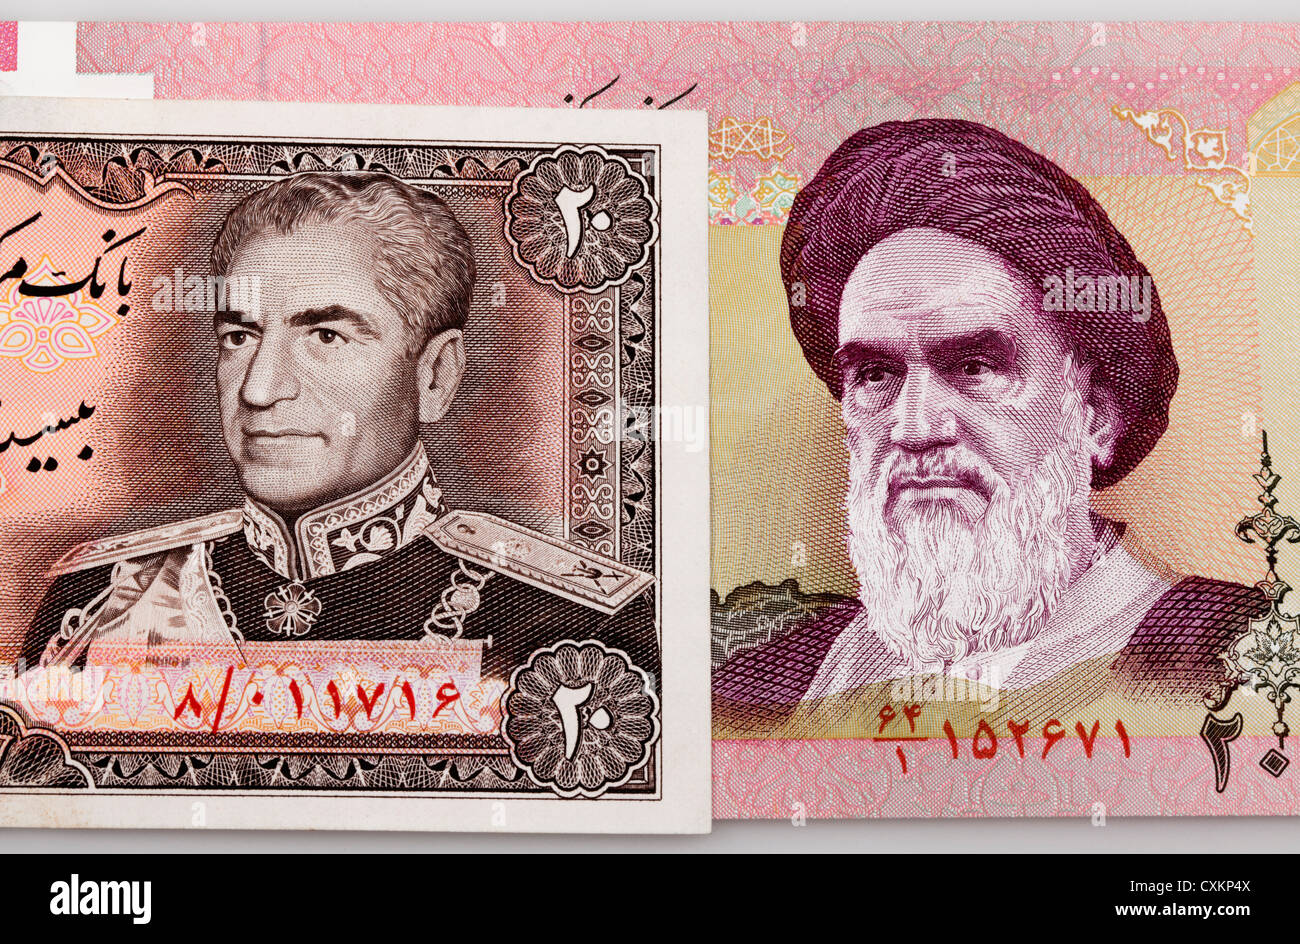 Banca storico notes da Iran con ritratti di Shah Mohammad Reza Pahlavi e Ruhollah Khomeini, Foto Stock